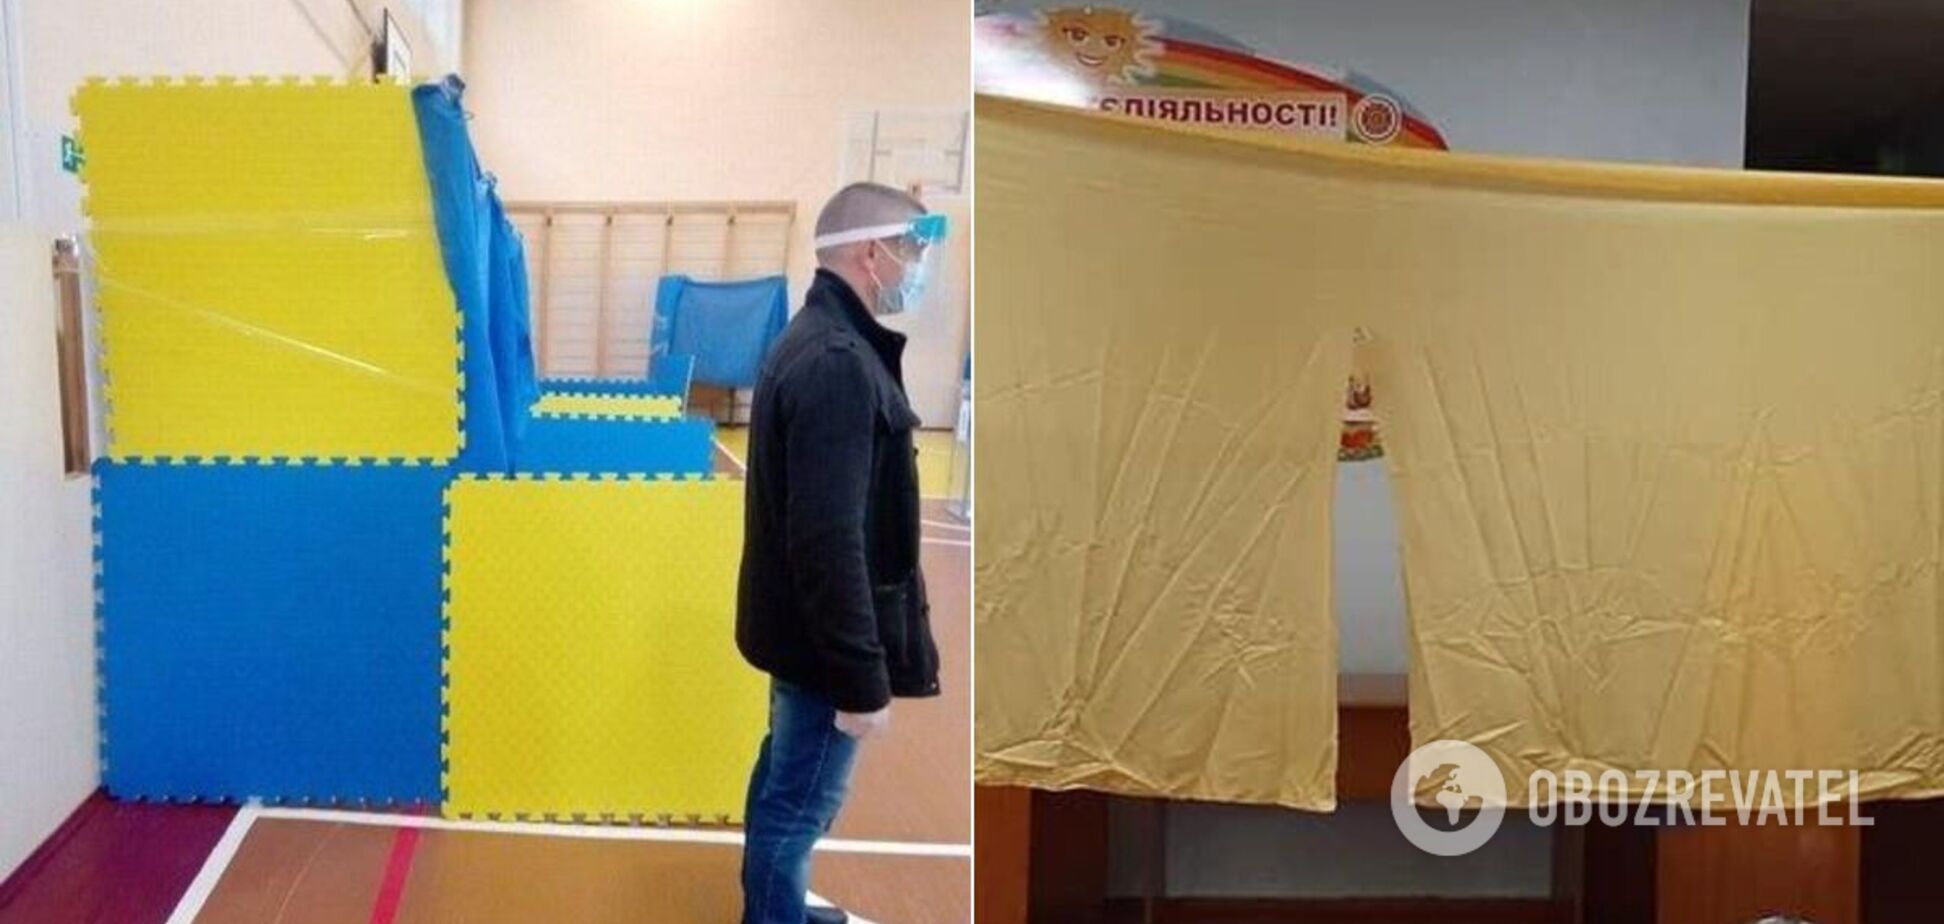 В Житомире кабинки для голосования сделали из тряпок и ширмы для кукольного театра